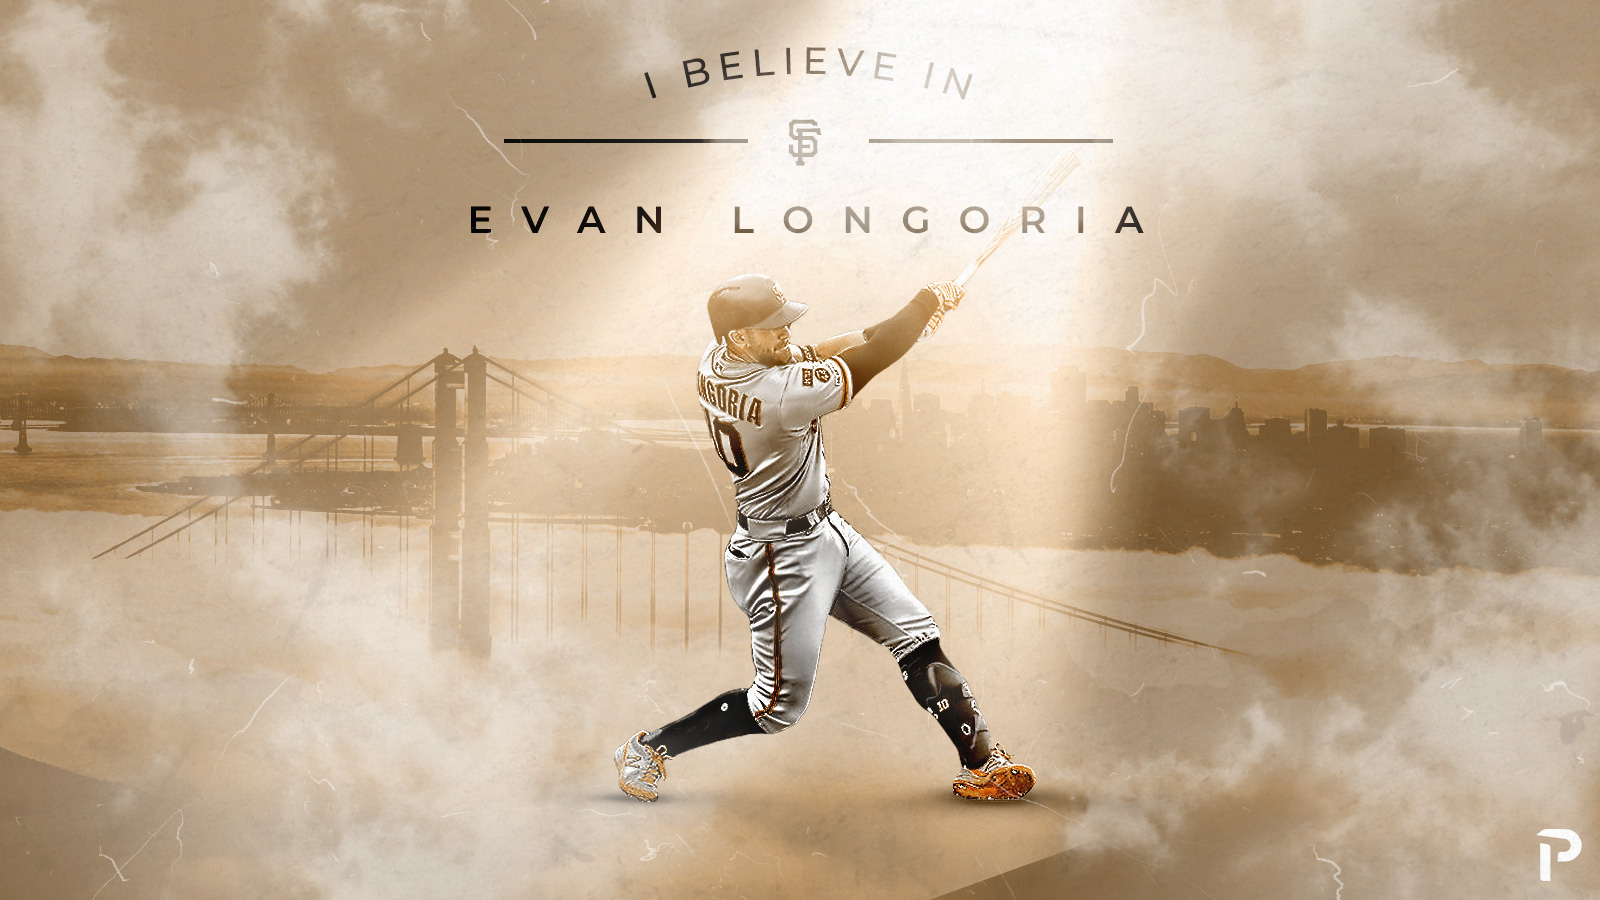 I Believe in Evan Longoria